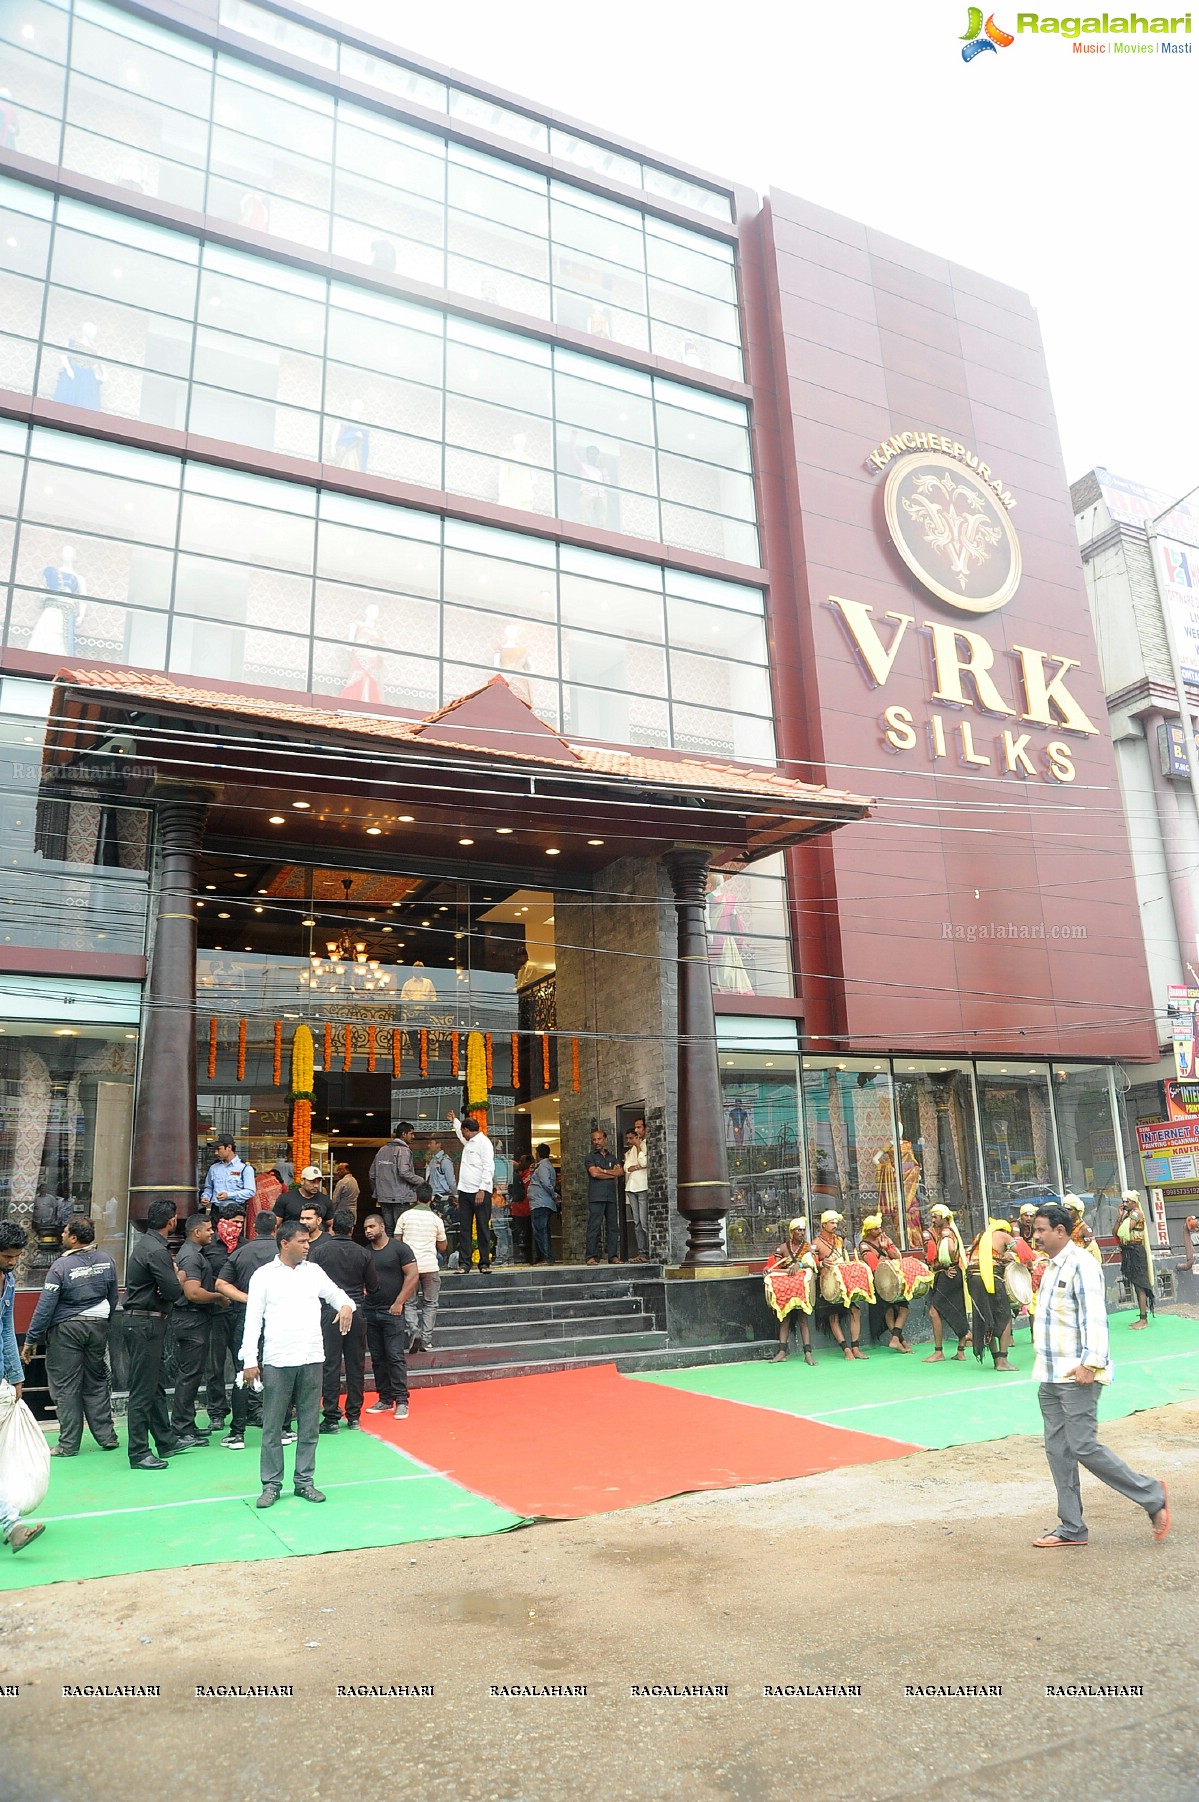 Pranitha Subhash launches Kancheepuram VRK Silks at Kukatpally